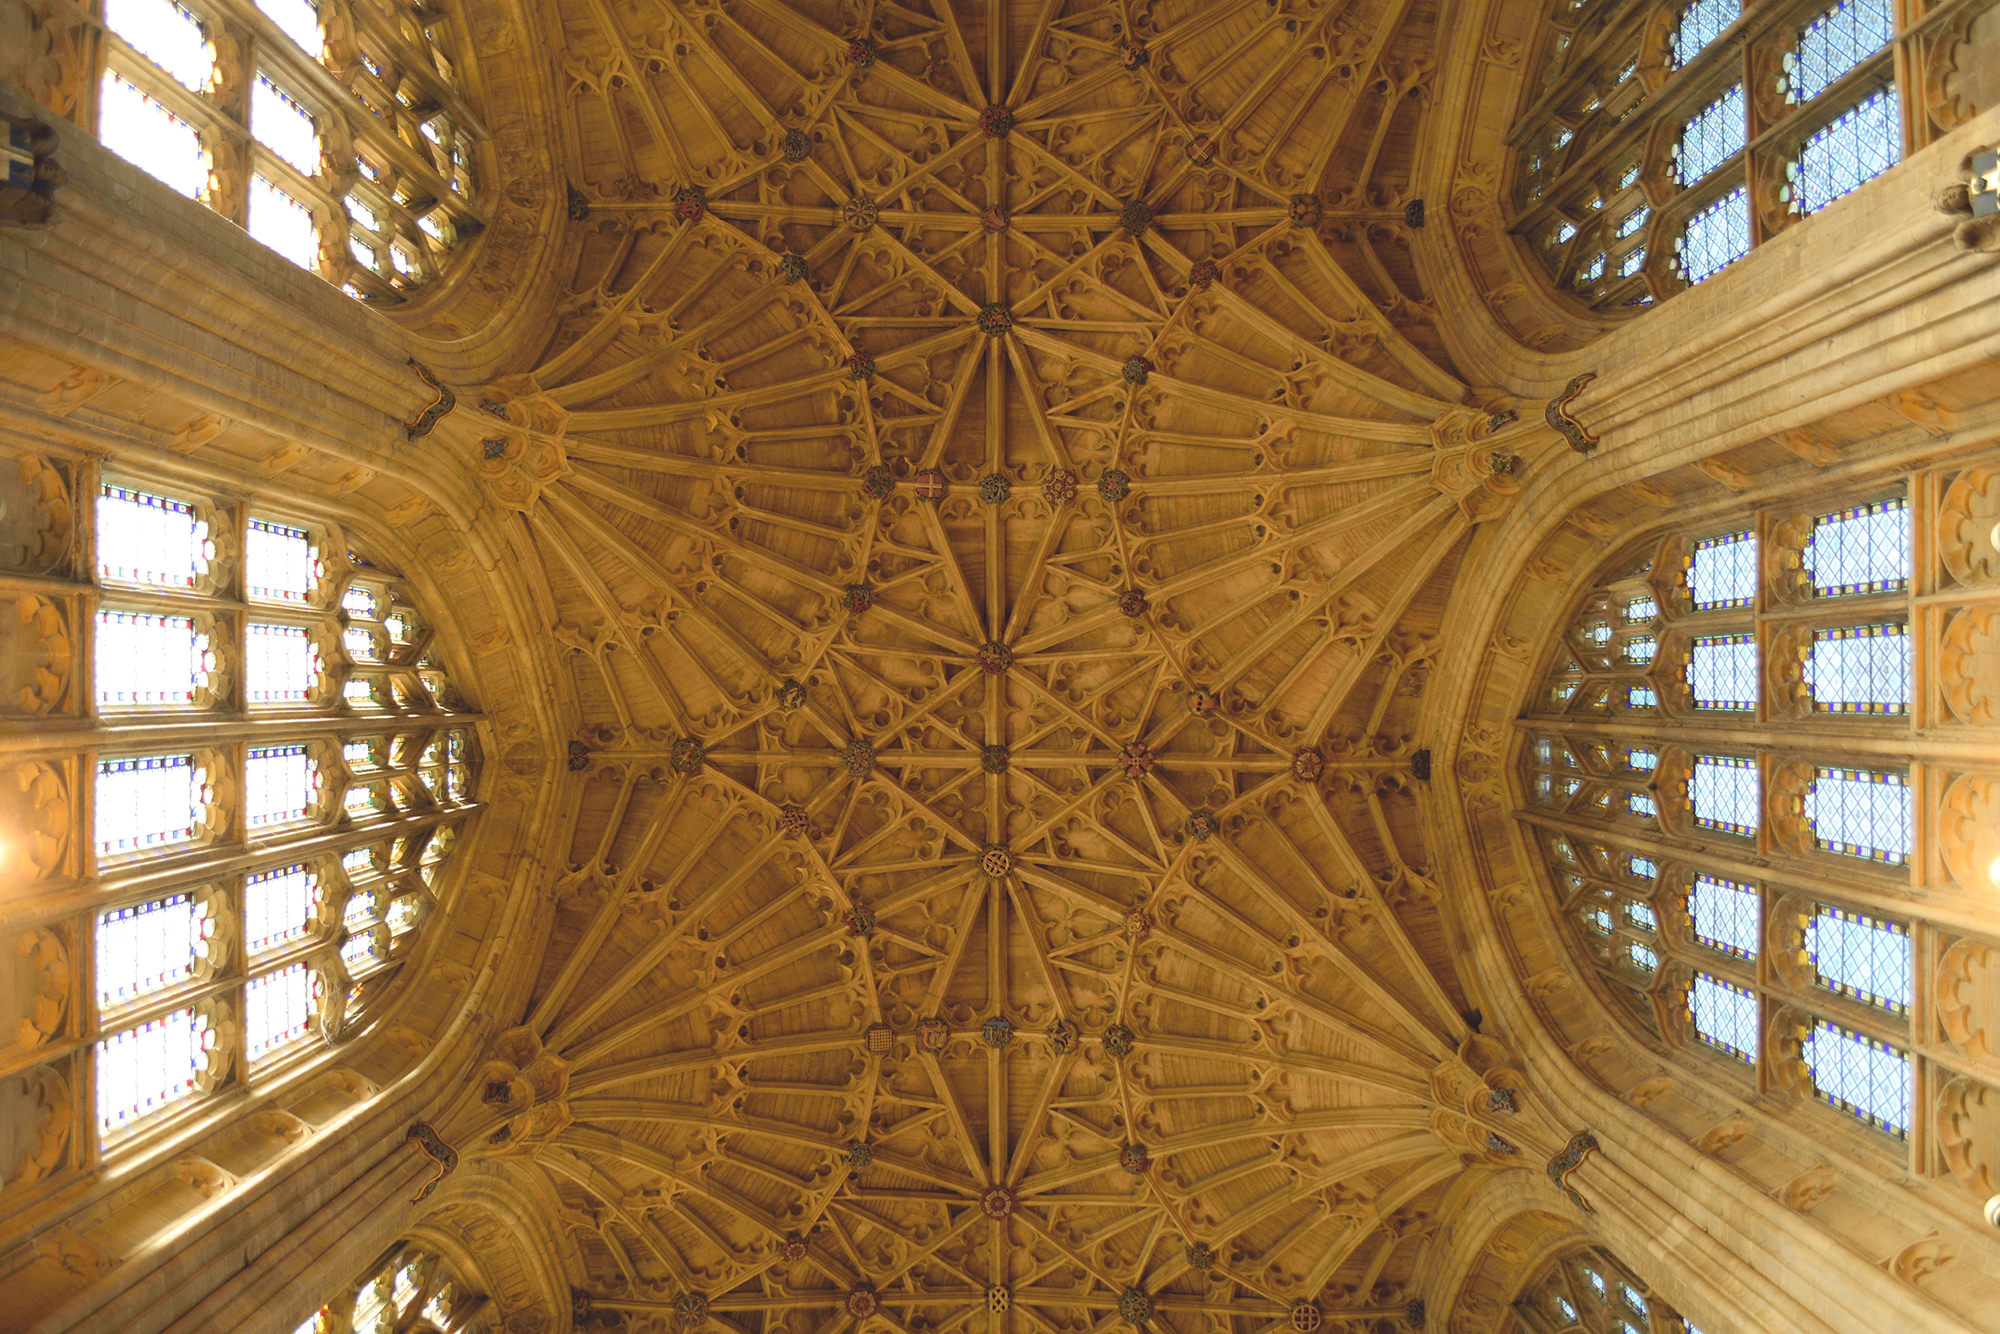 Vue du plafond orné et vouté de Sherborne Abbey.